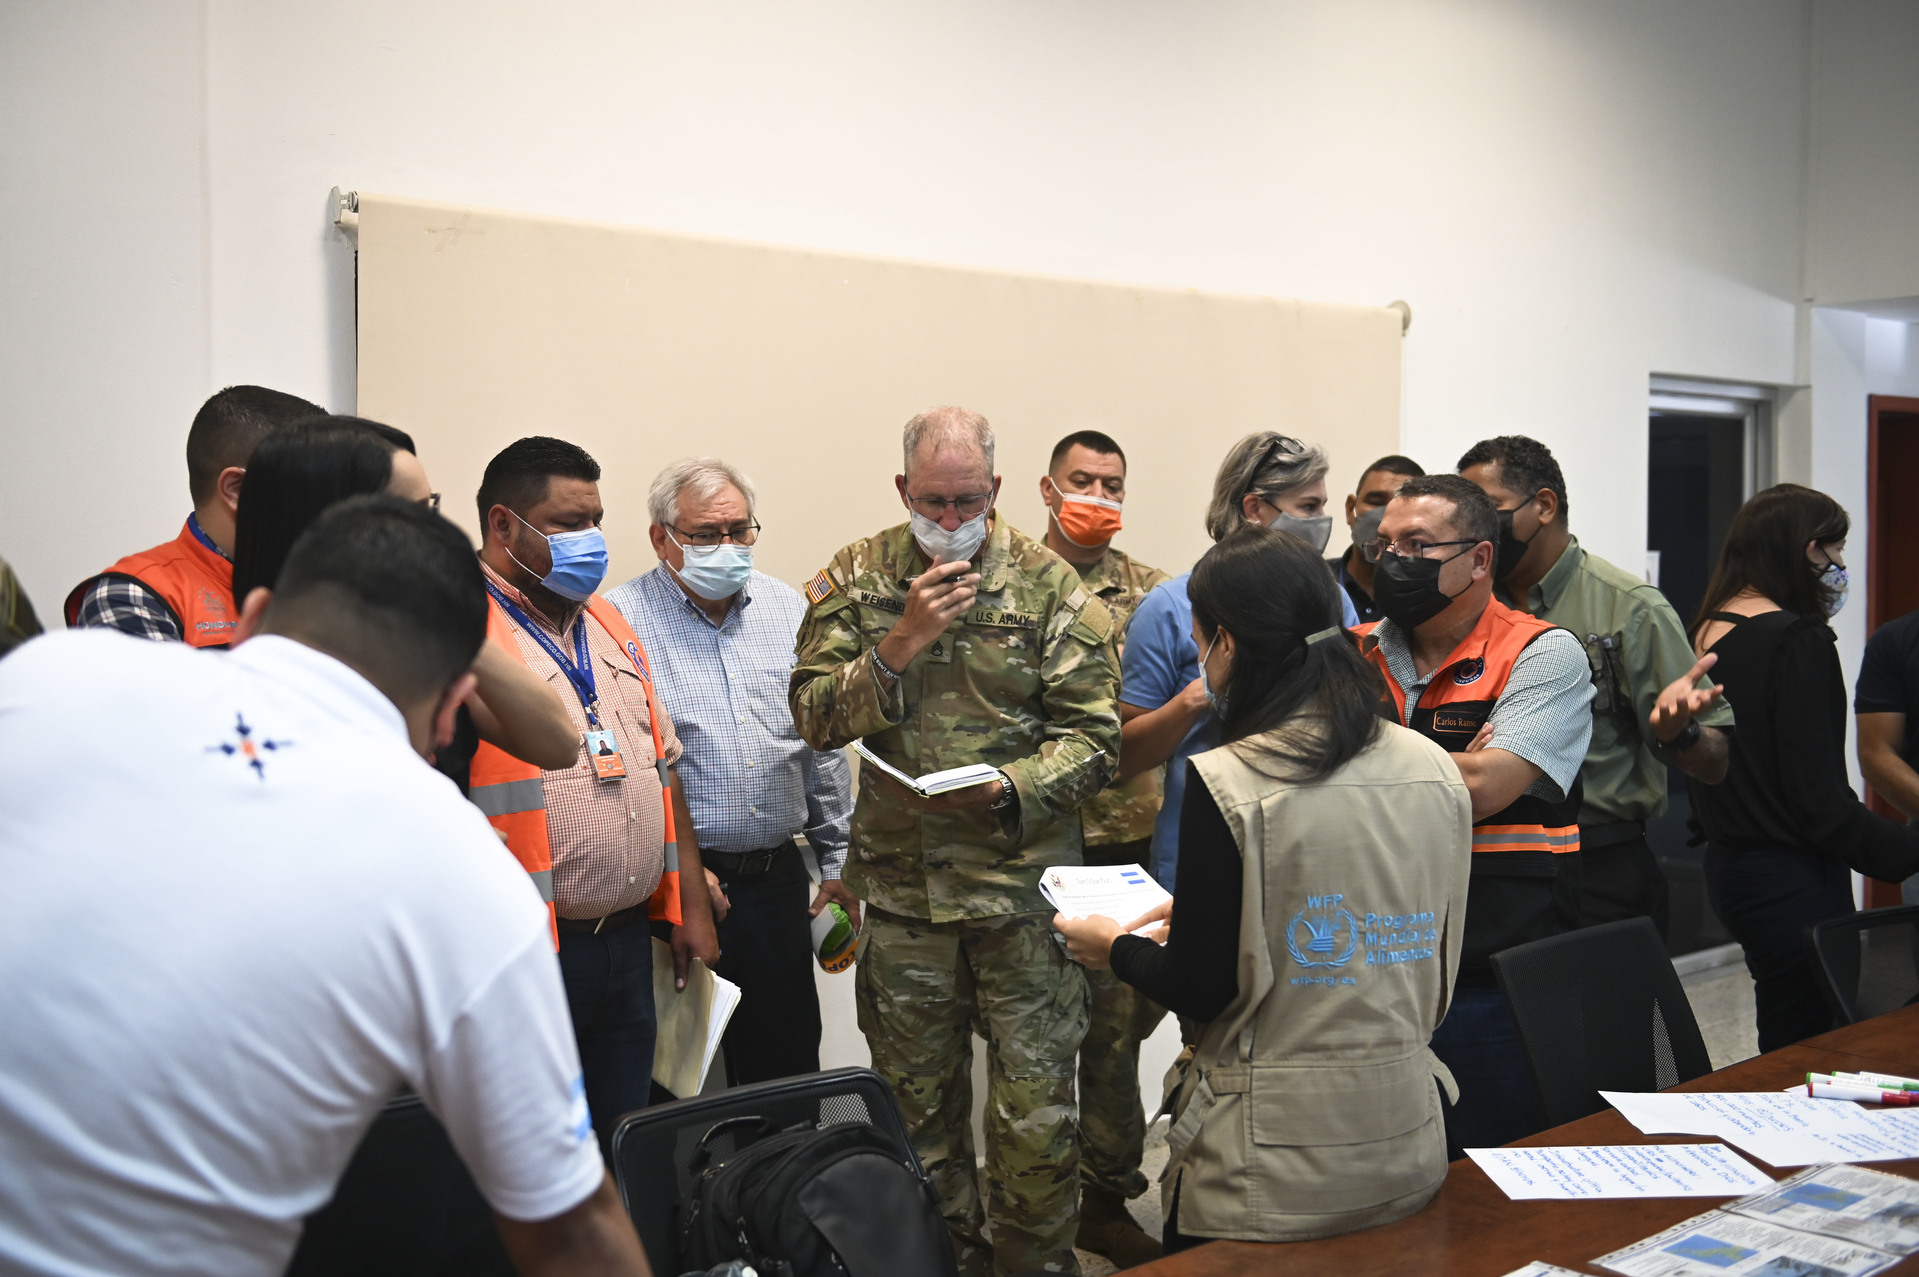 JTF-Bravo, Honduras, Crear confianza y preparar para desastres